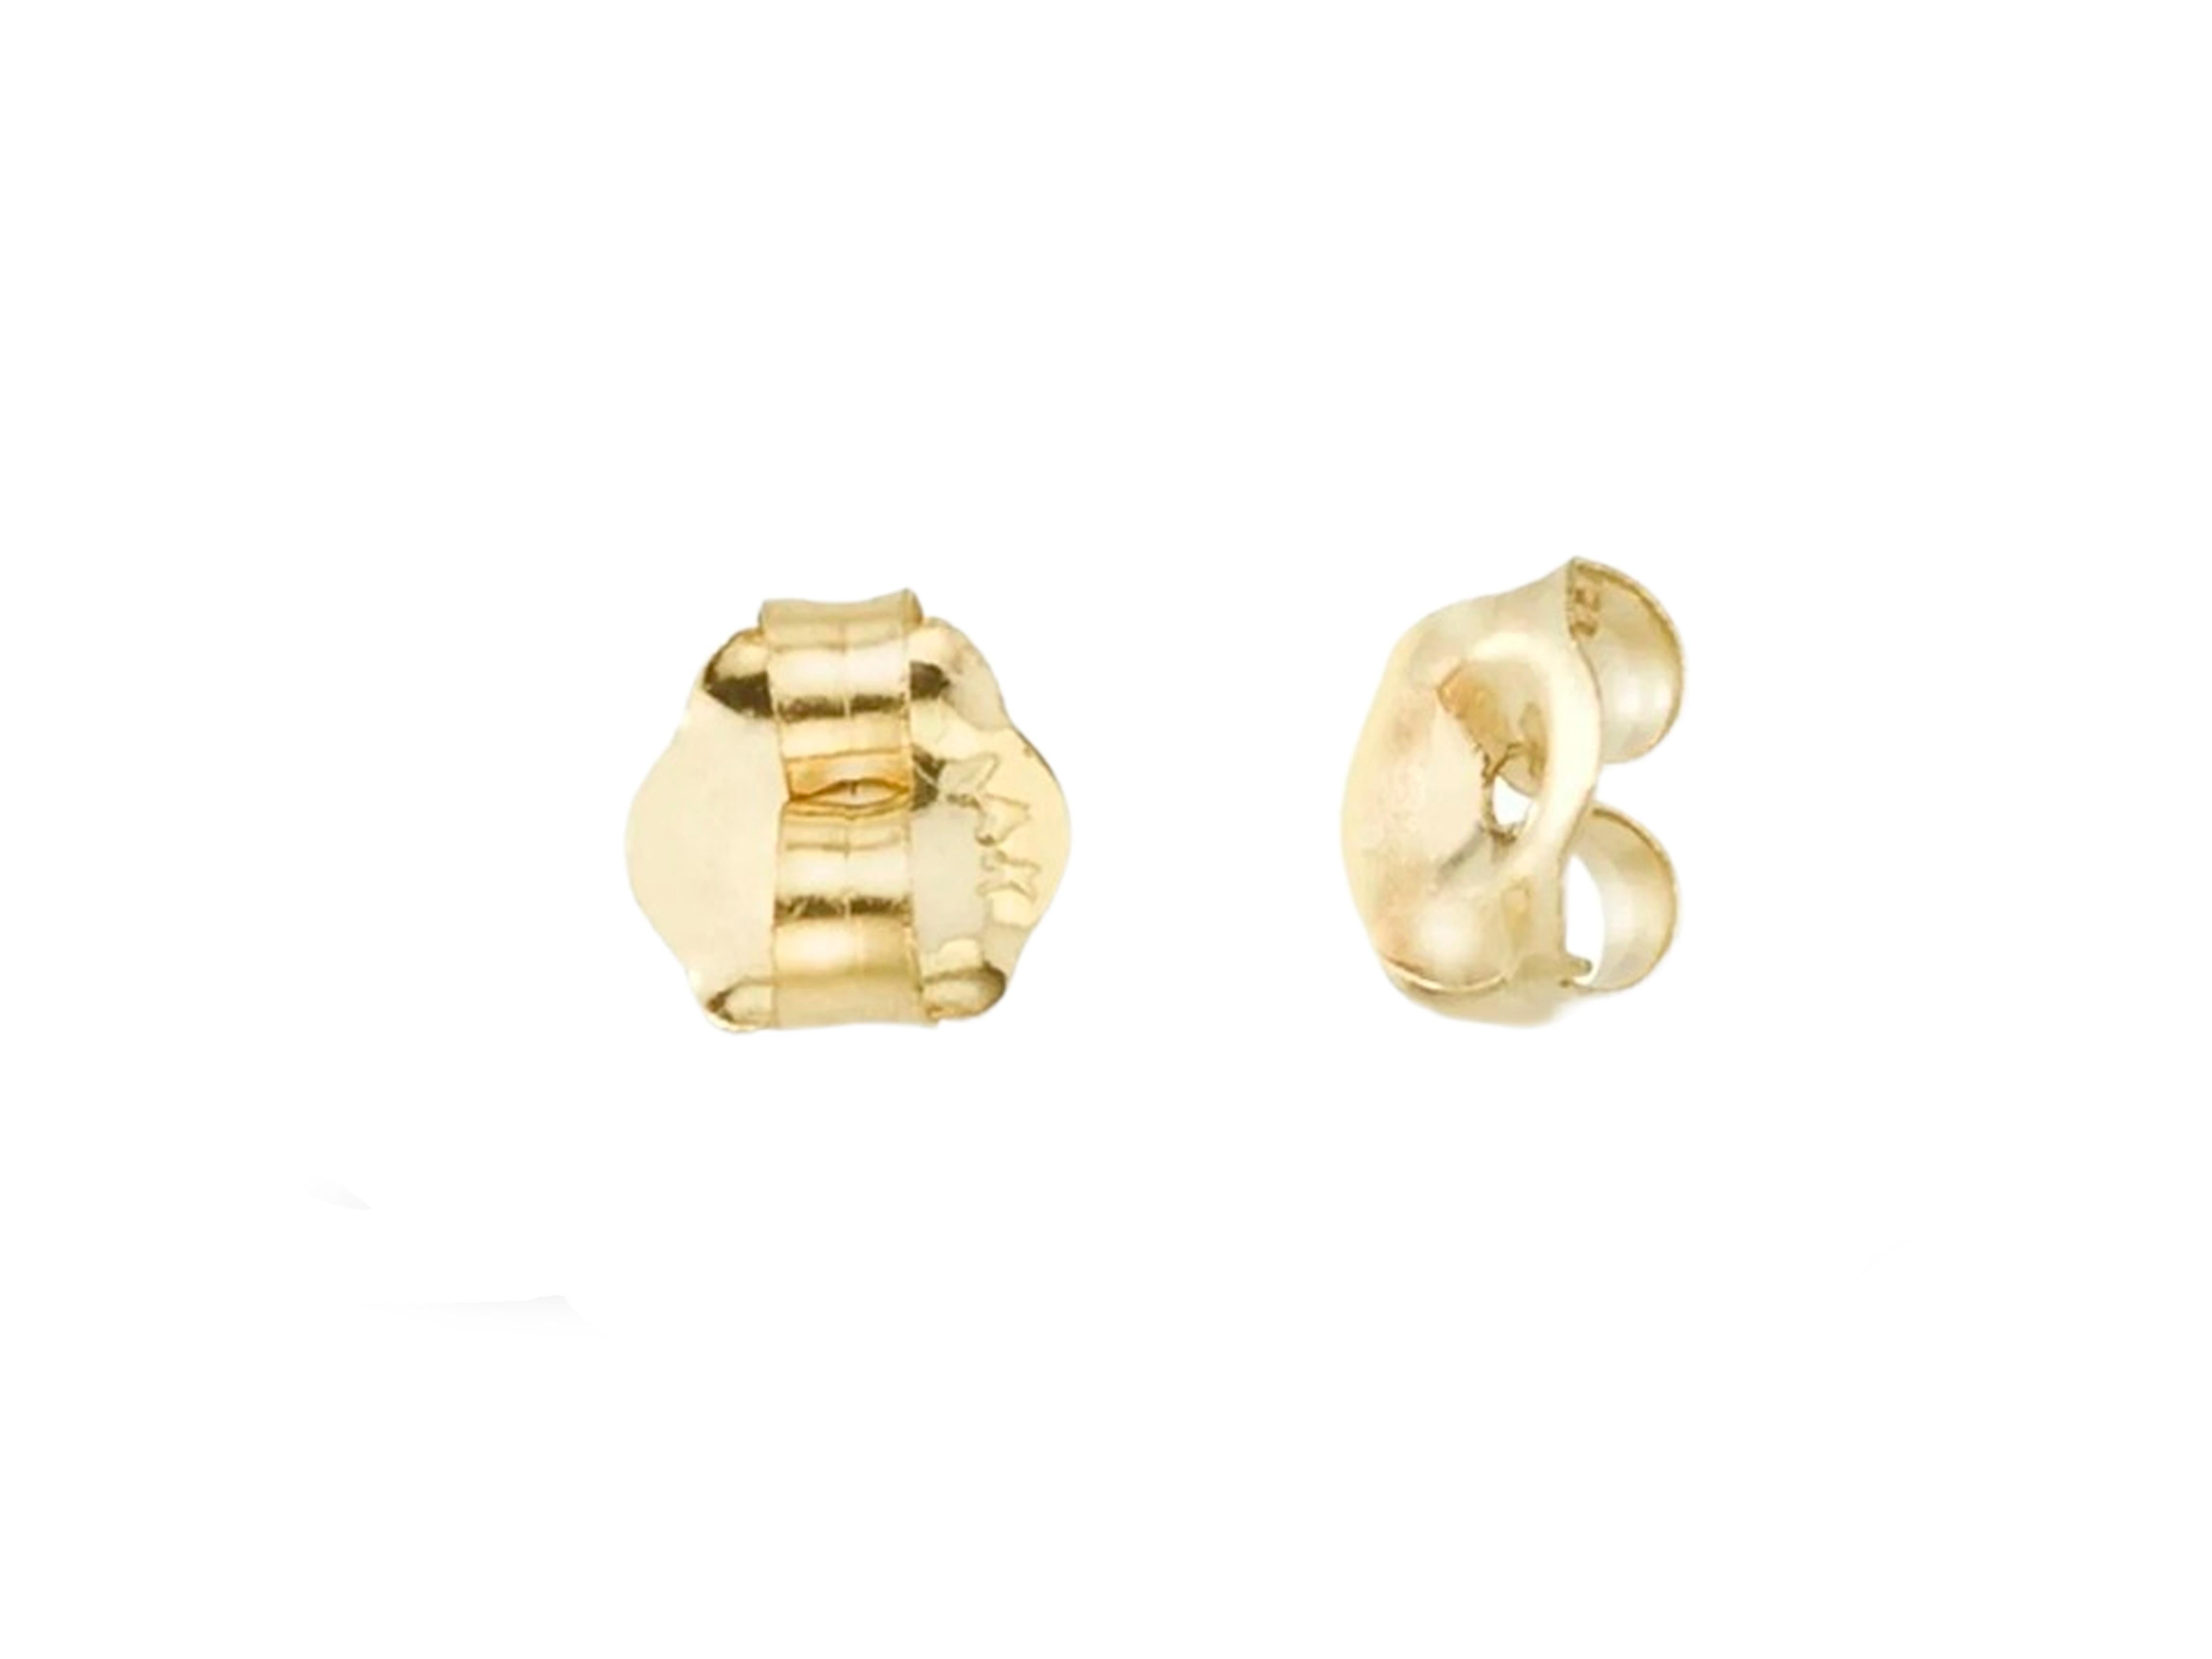 Lotus Earrings Studs with Opals in 14k Gold, Opal Gold Earrings 2